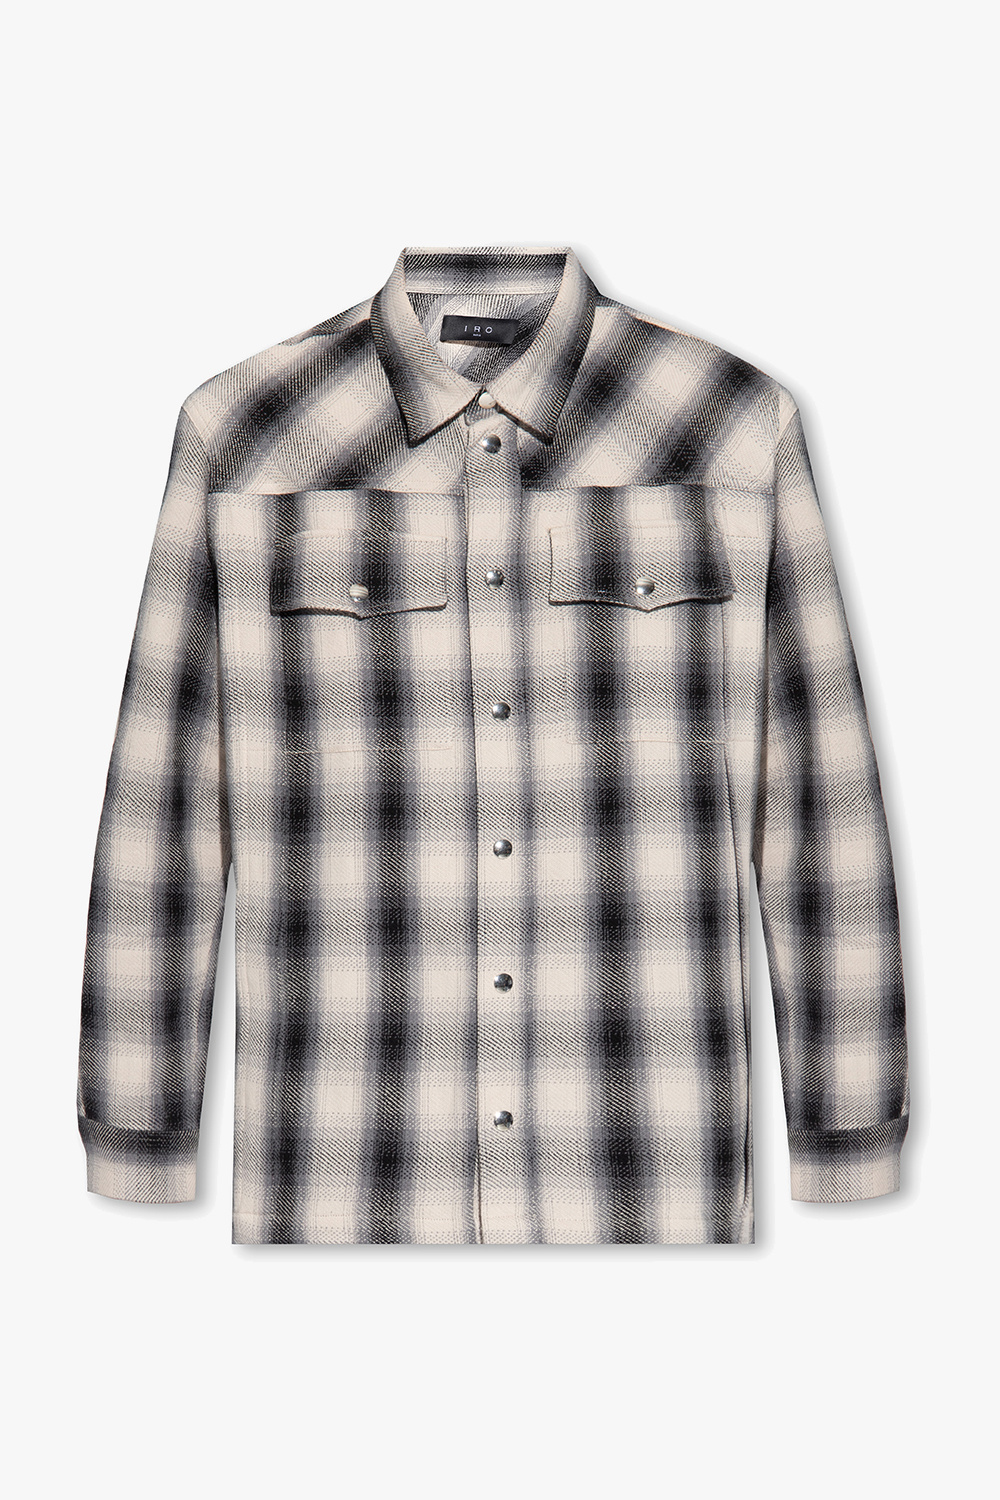 Iro Checked shirt | Men's Clothing | Vitkac